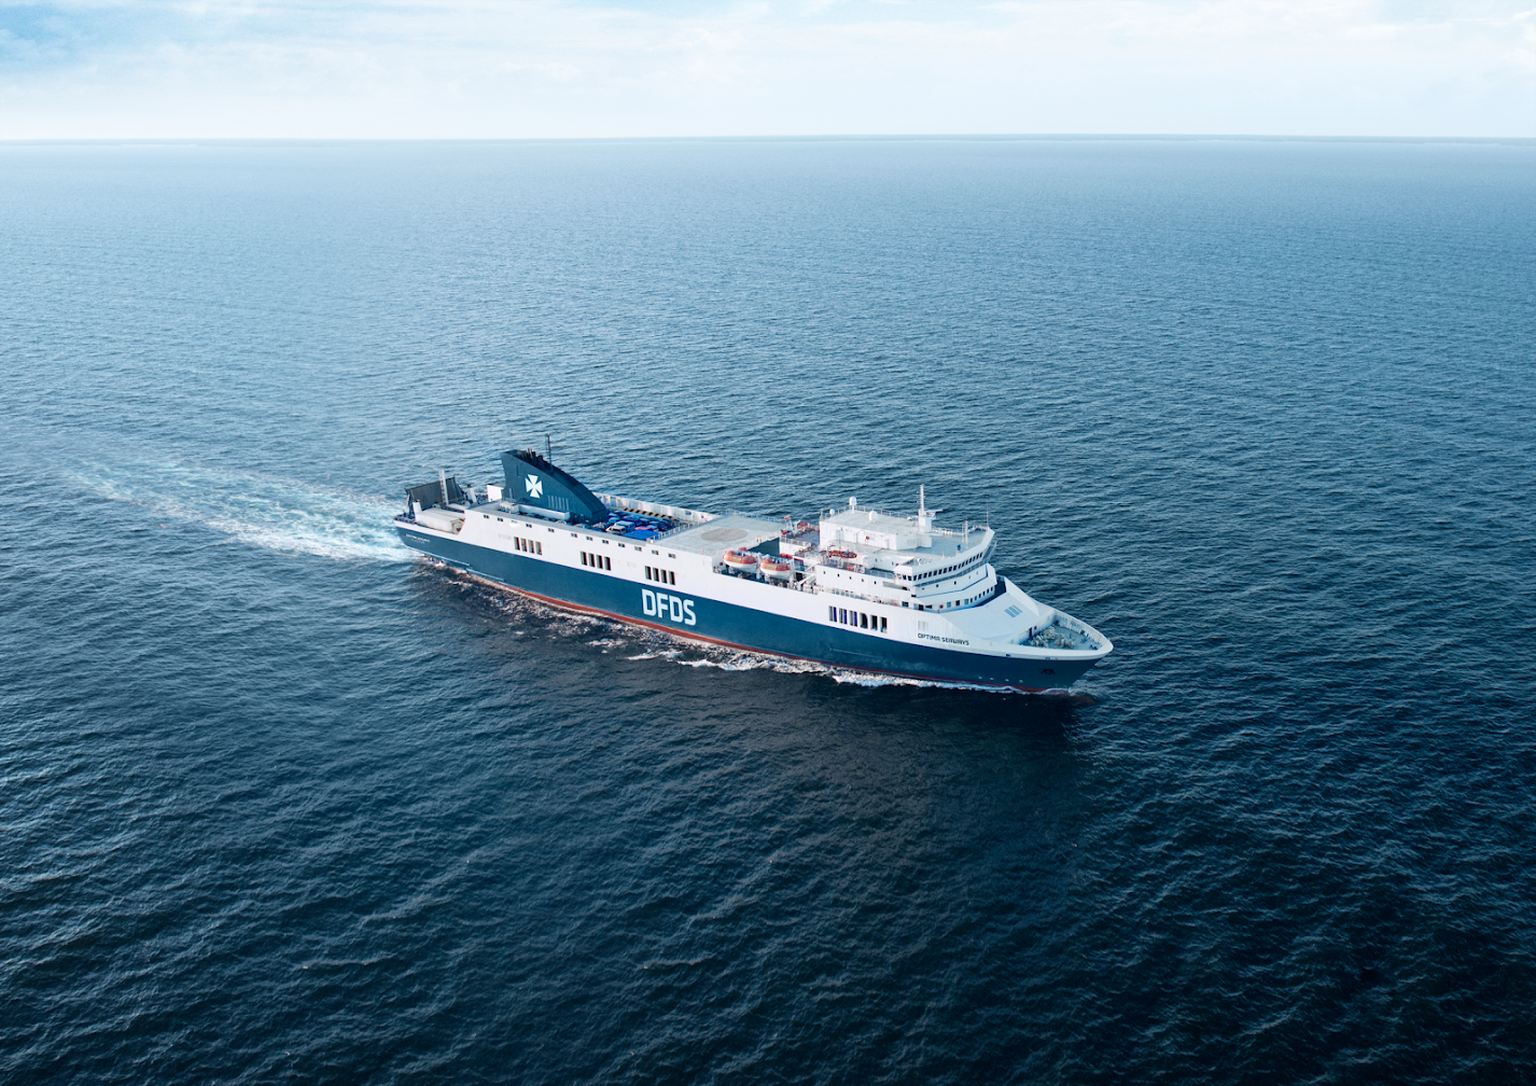 DFDSi laev Optima Seaways.